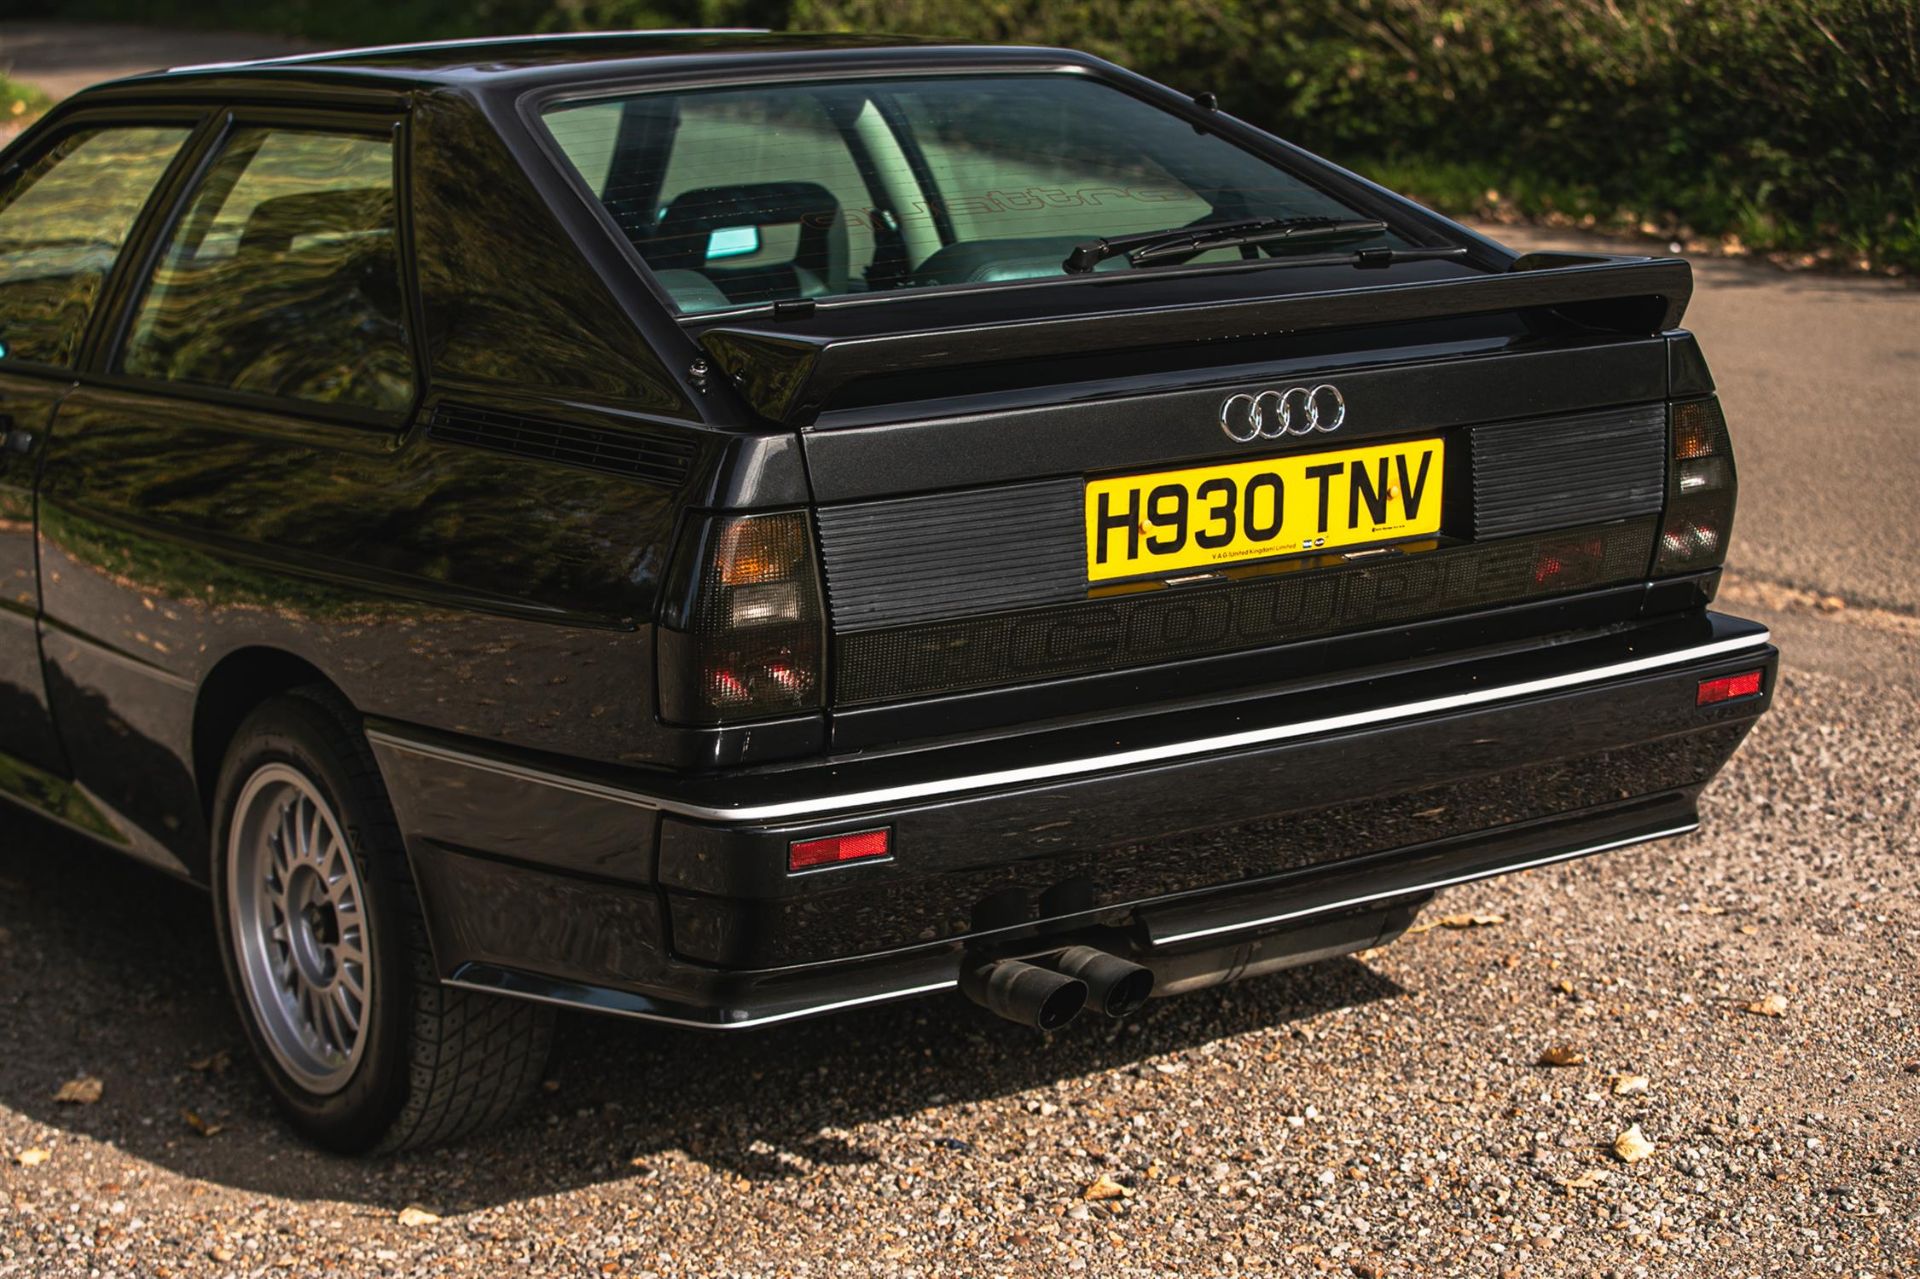 1990 Audi UR Quattro 2.2 Turbo RR 20v - Image 9 of 10